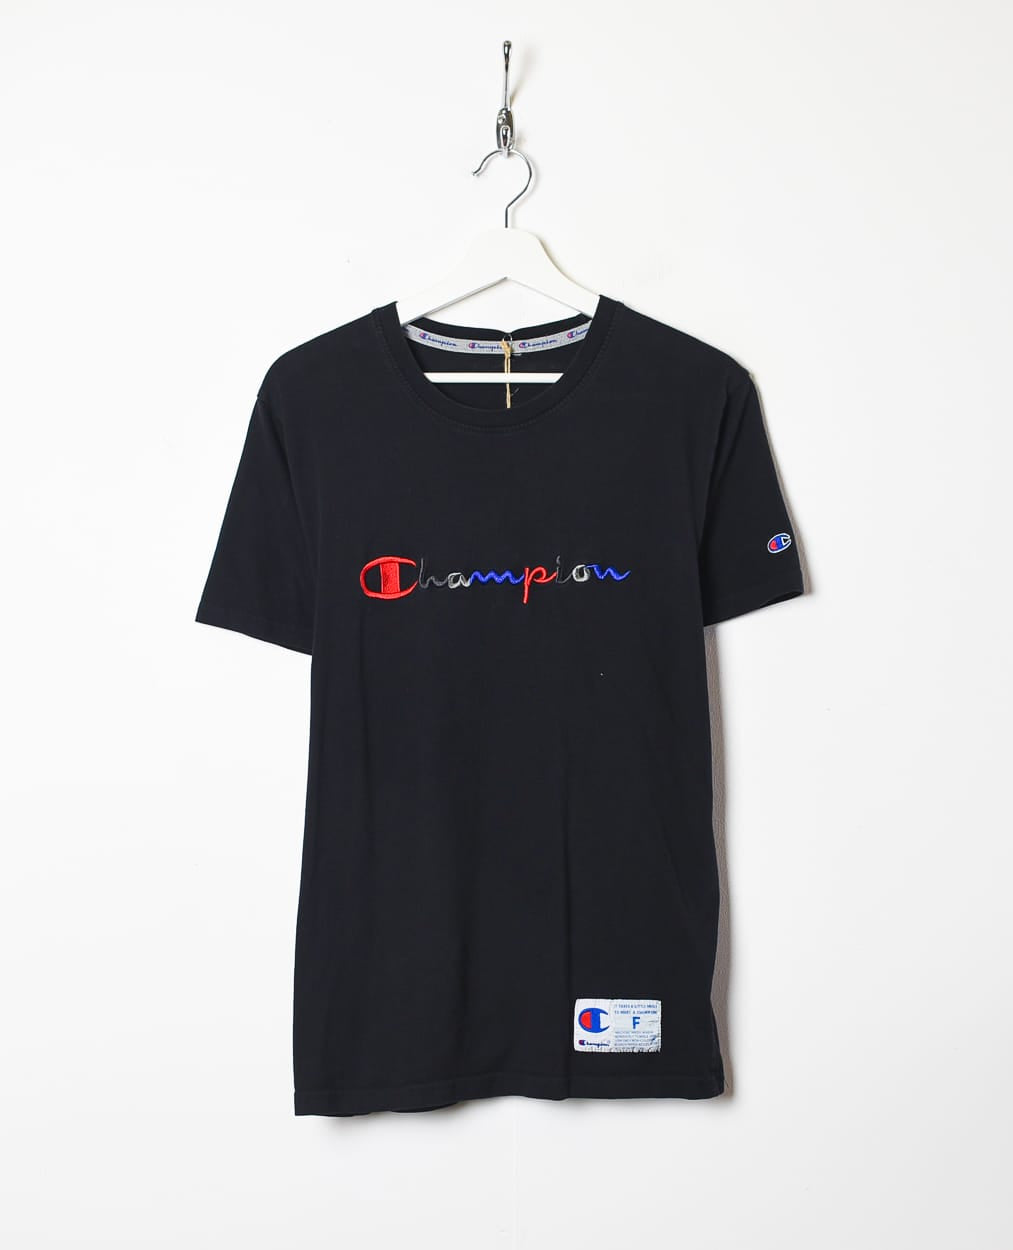 Black Champion T-Shirt - Medium